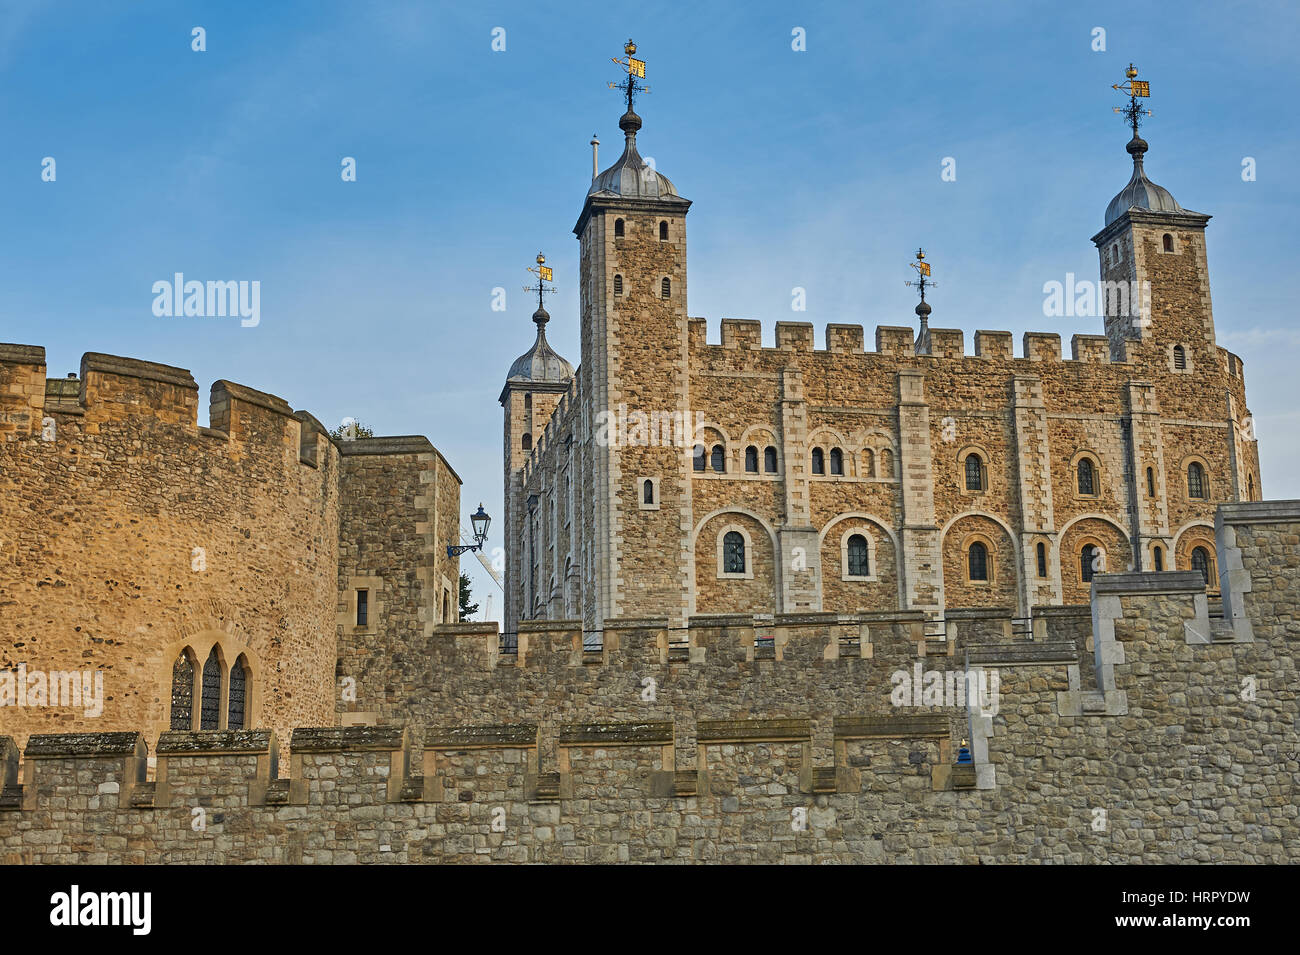 Der Tower of London ist ein Wahrzeichen bei Touristen sehr beliebt. Stockfoto